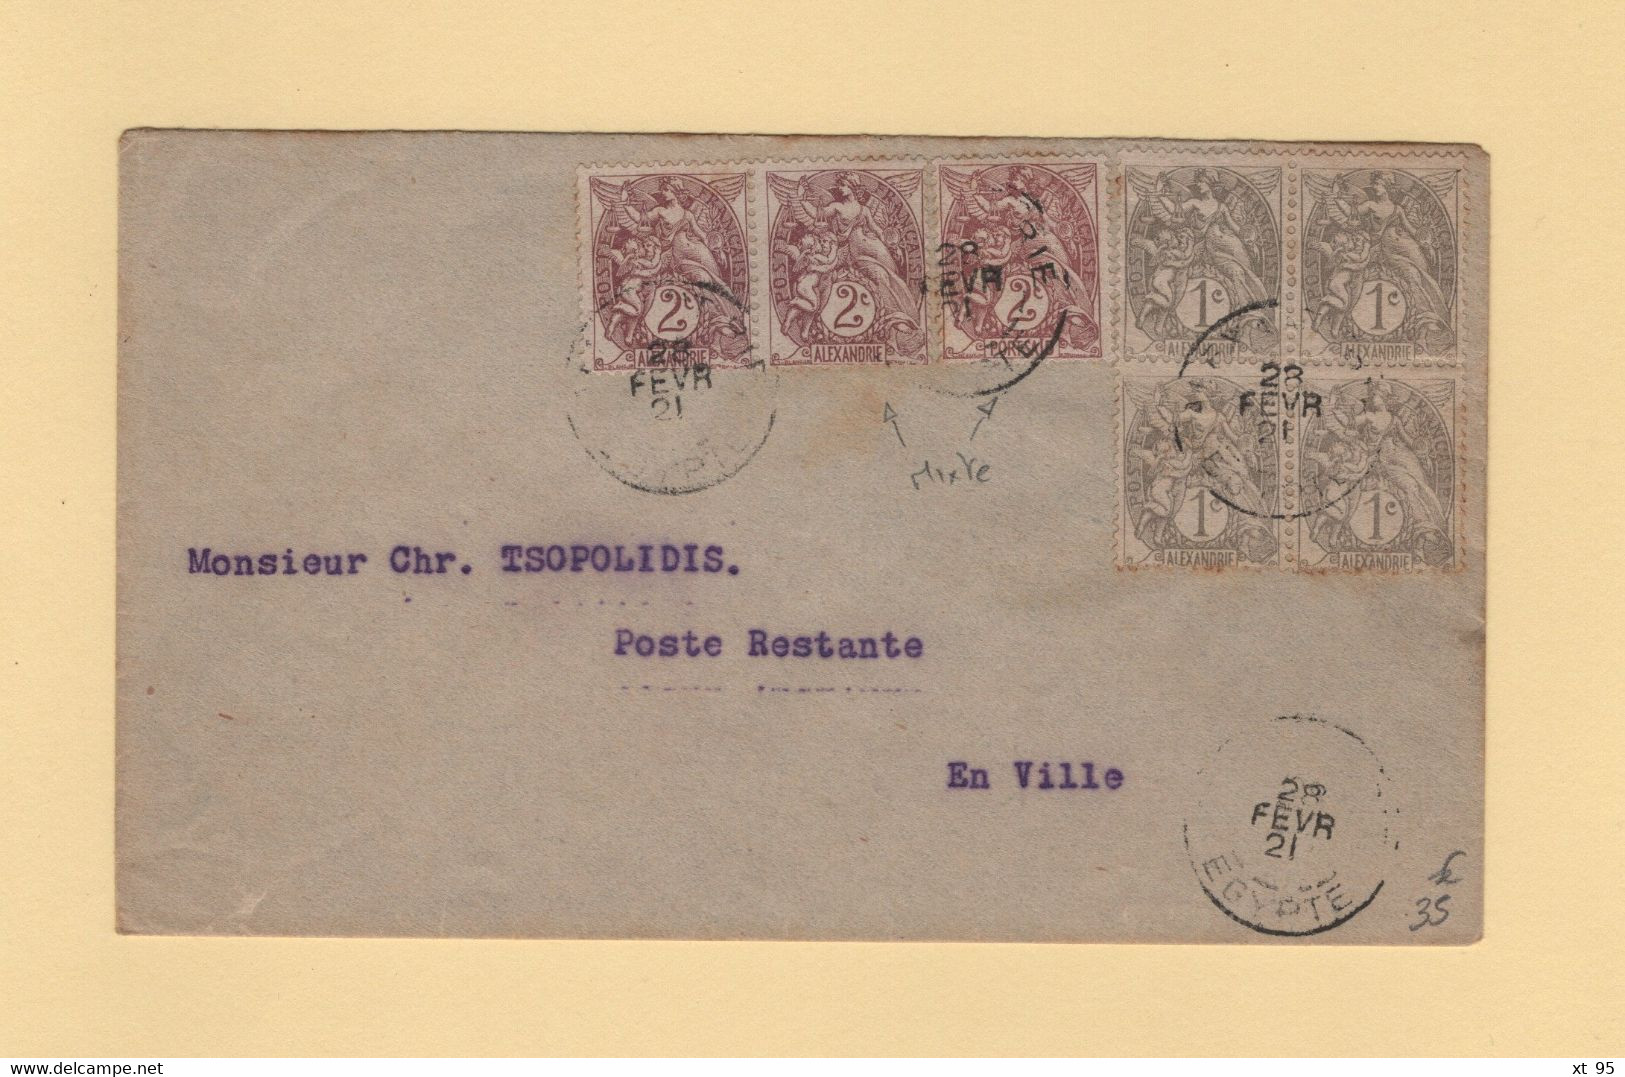 Alexandrie - Egypte - 28 Fevrier 1921 - Affranchissement Mixte Port Said Alexandrie - Type Blanc - Lettres & Documents